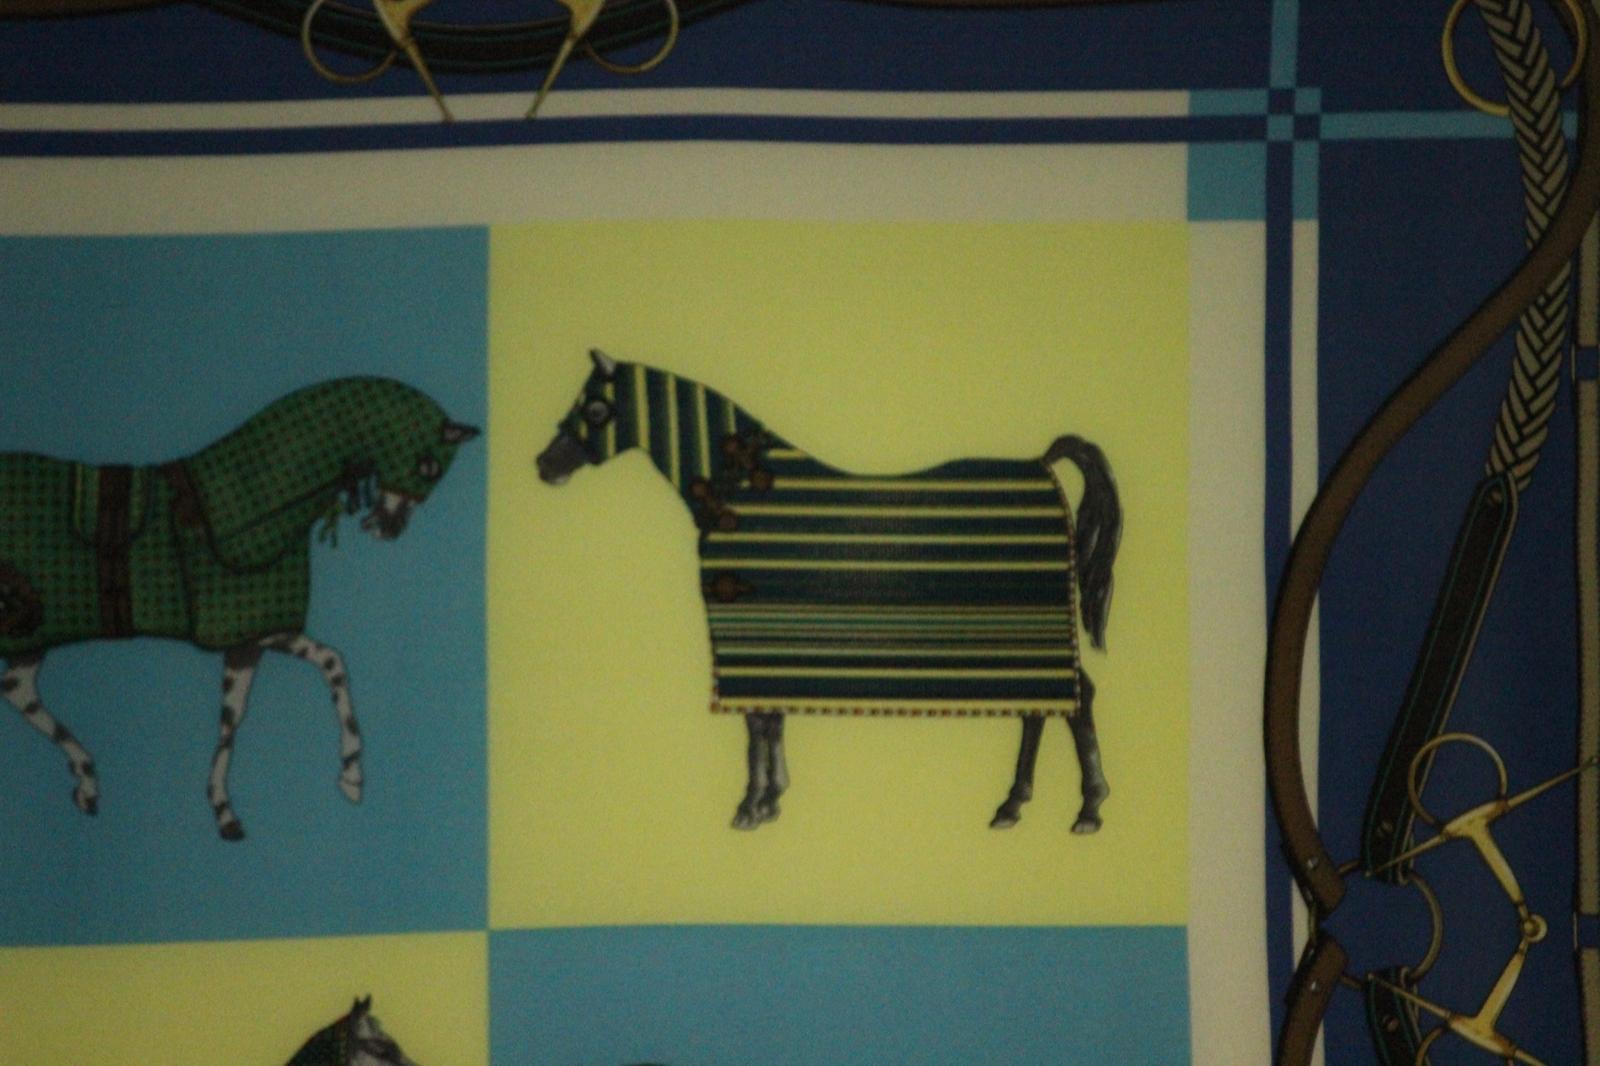 Chic écharpe équestre en soie des années 1980 représentant quatre chevaux

Taille de l'écharpe : 33 